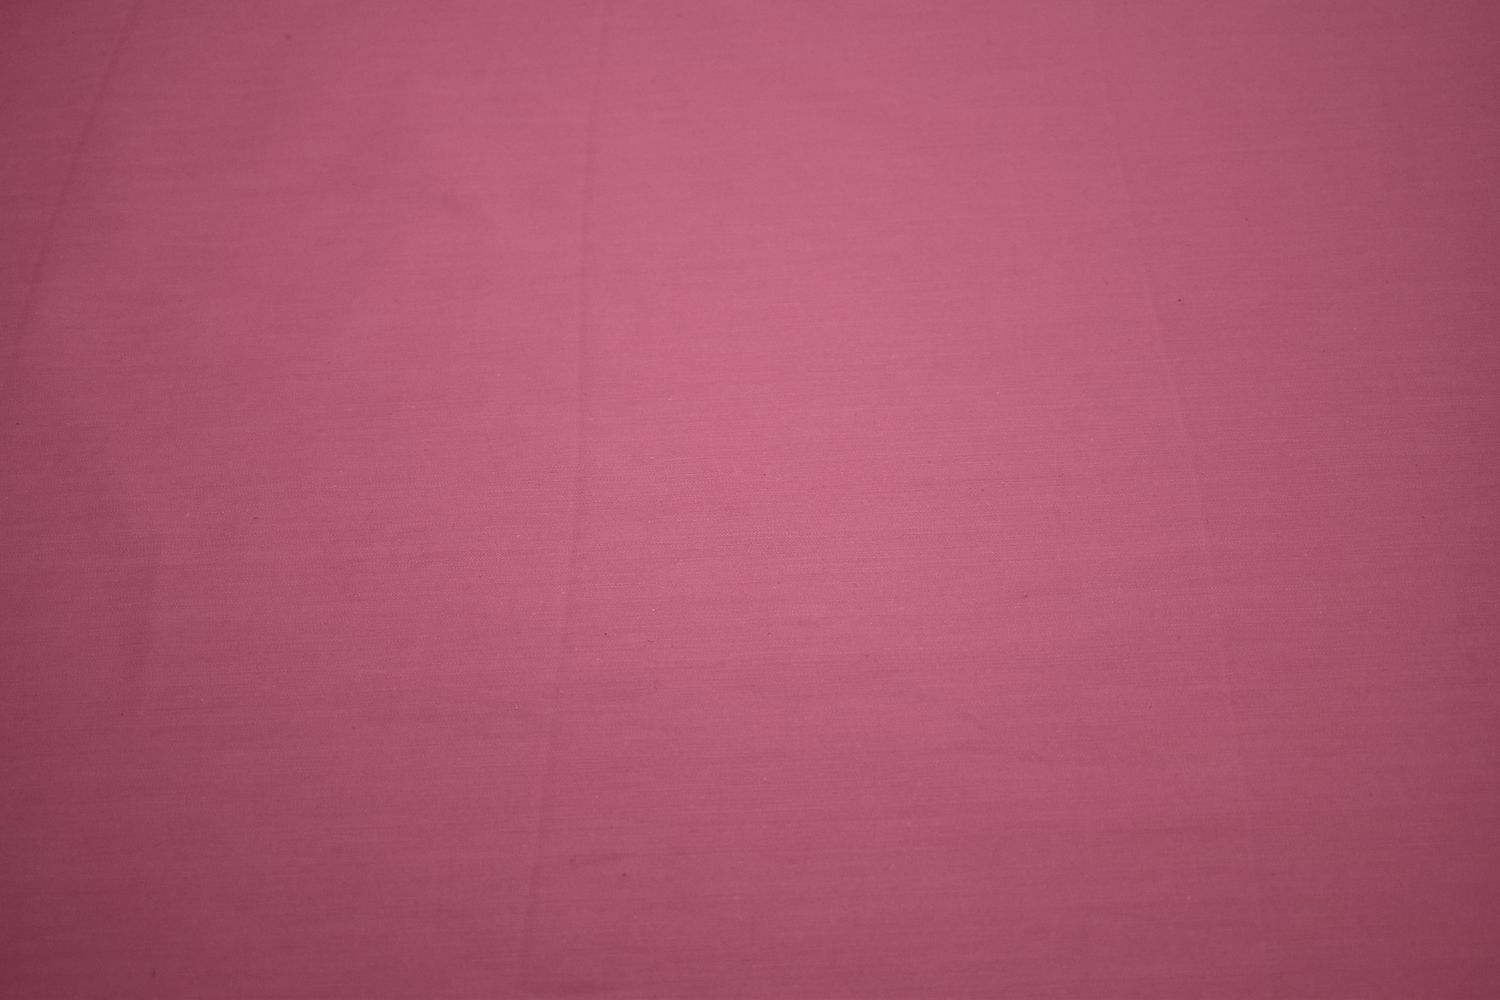 Джинс розовый W-125257